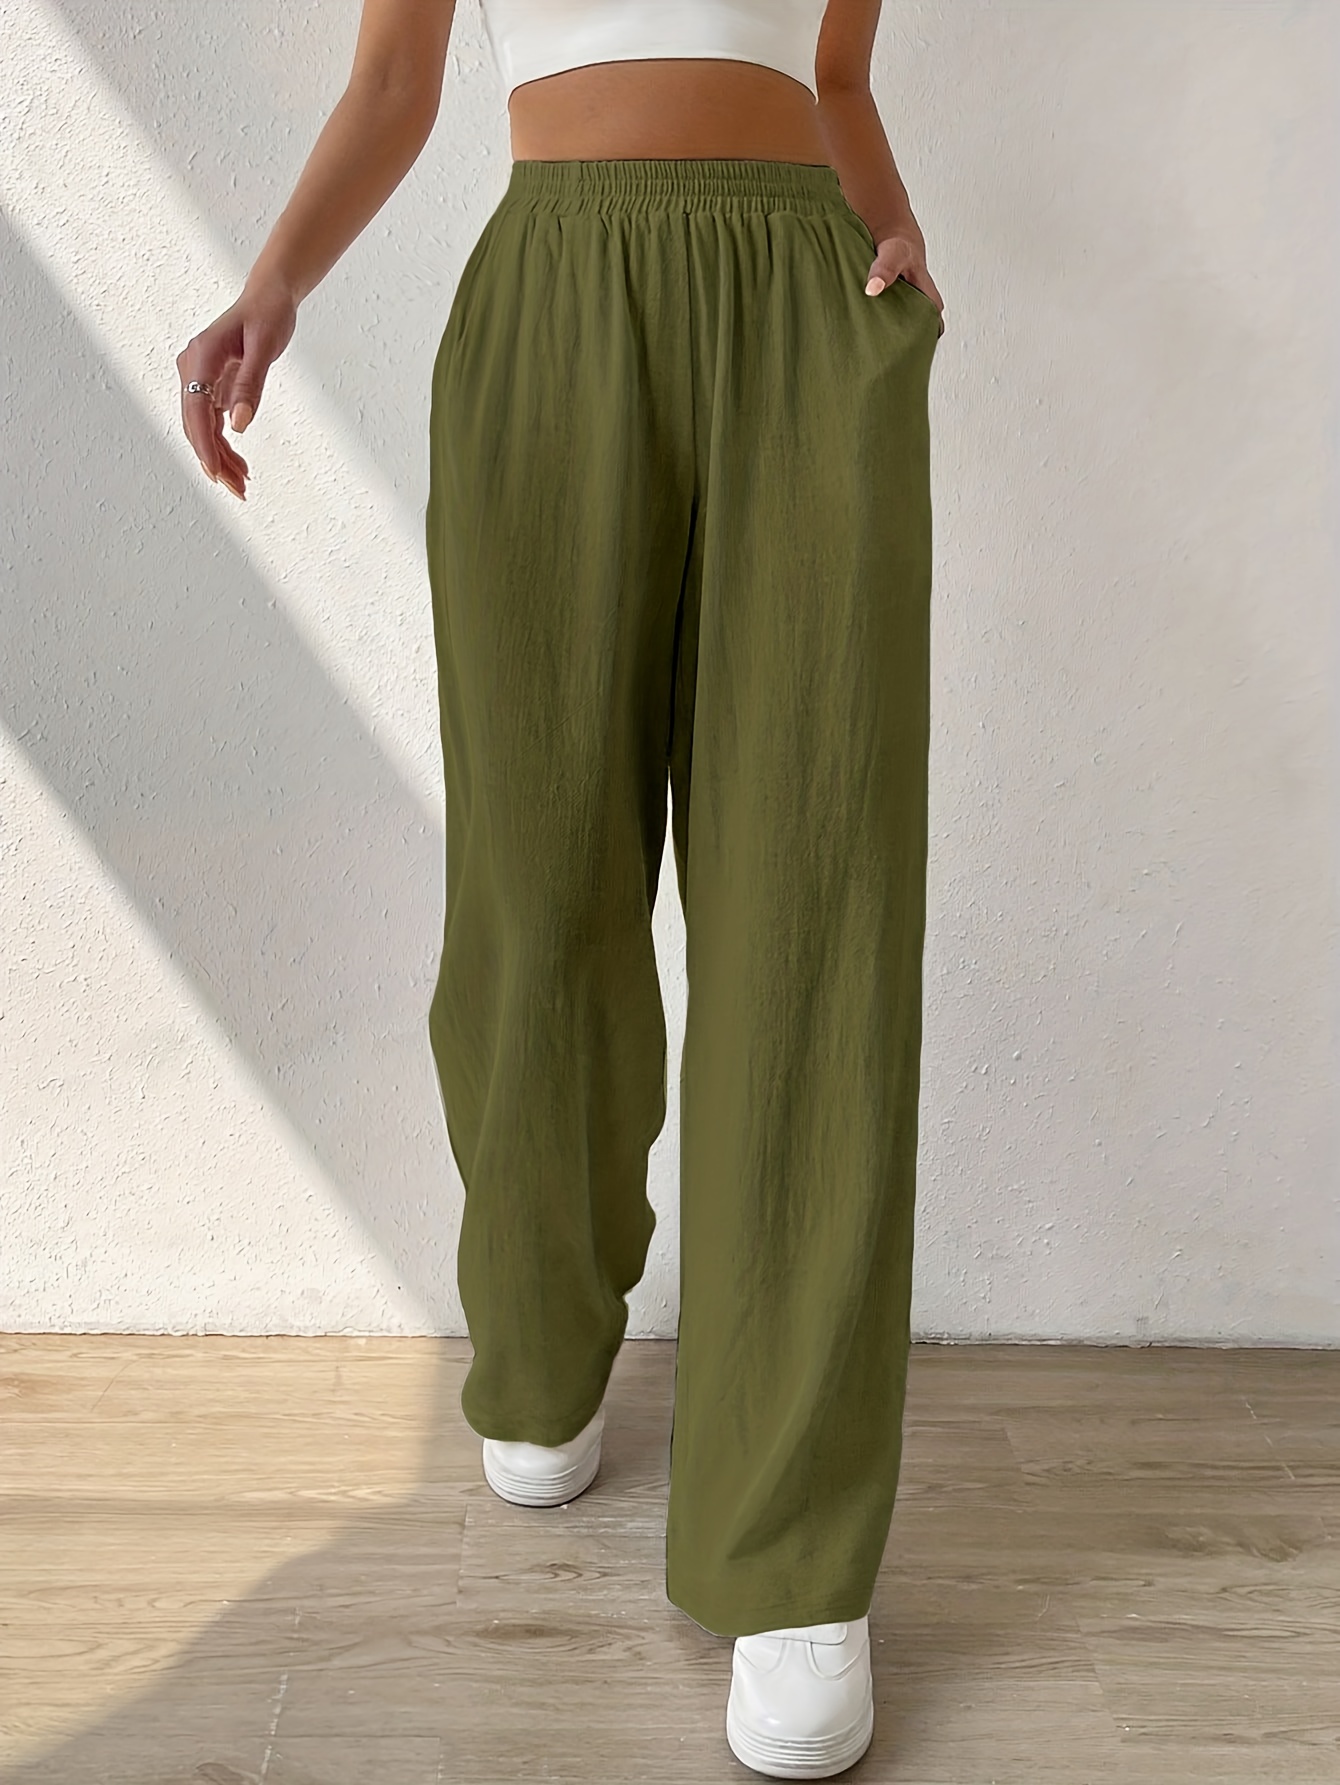 Pantalones anchos tela sublimada. Súper cómodos y suavecitos #ropa #moda  #mujer